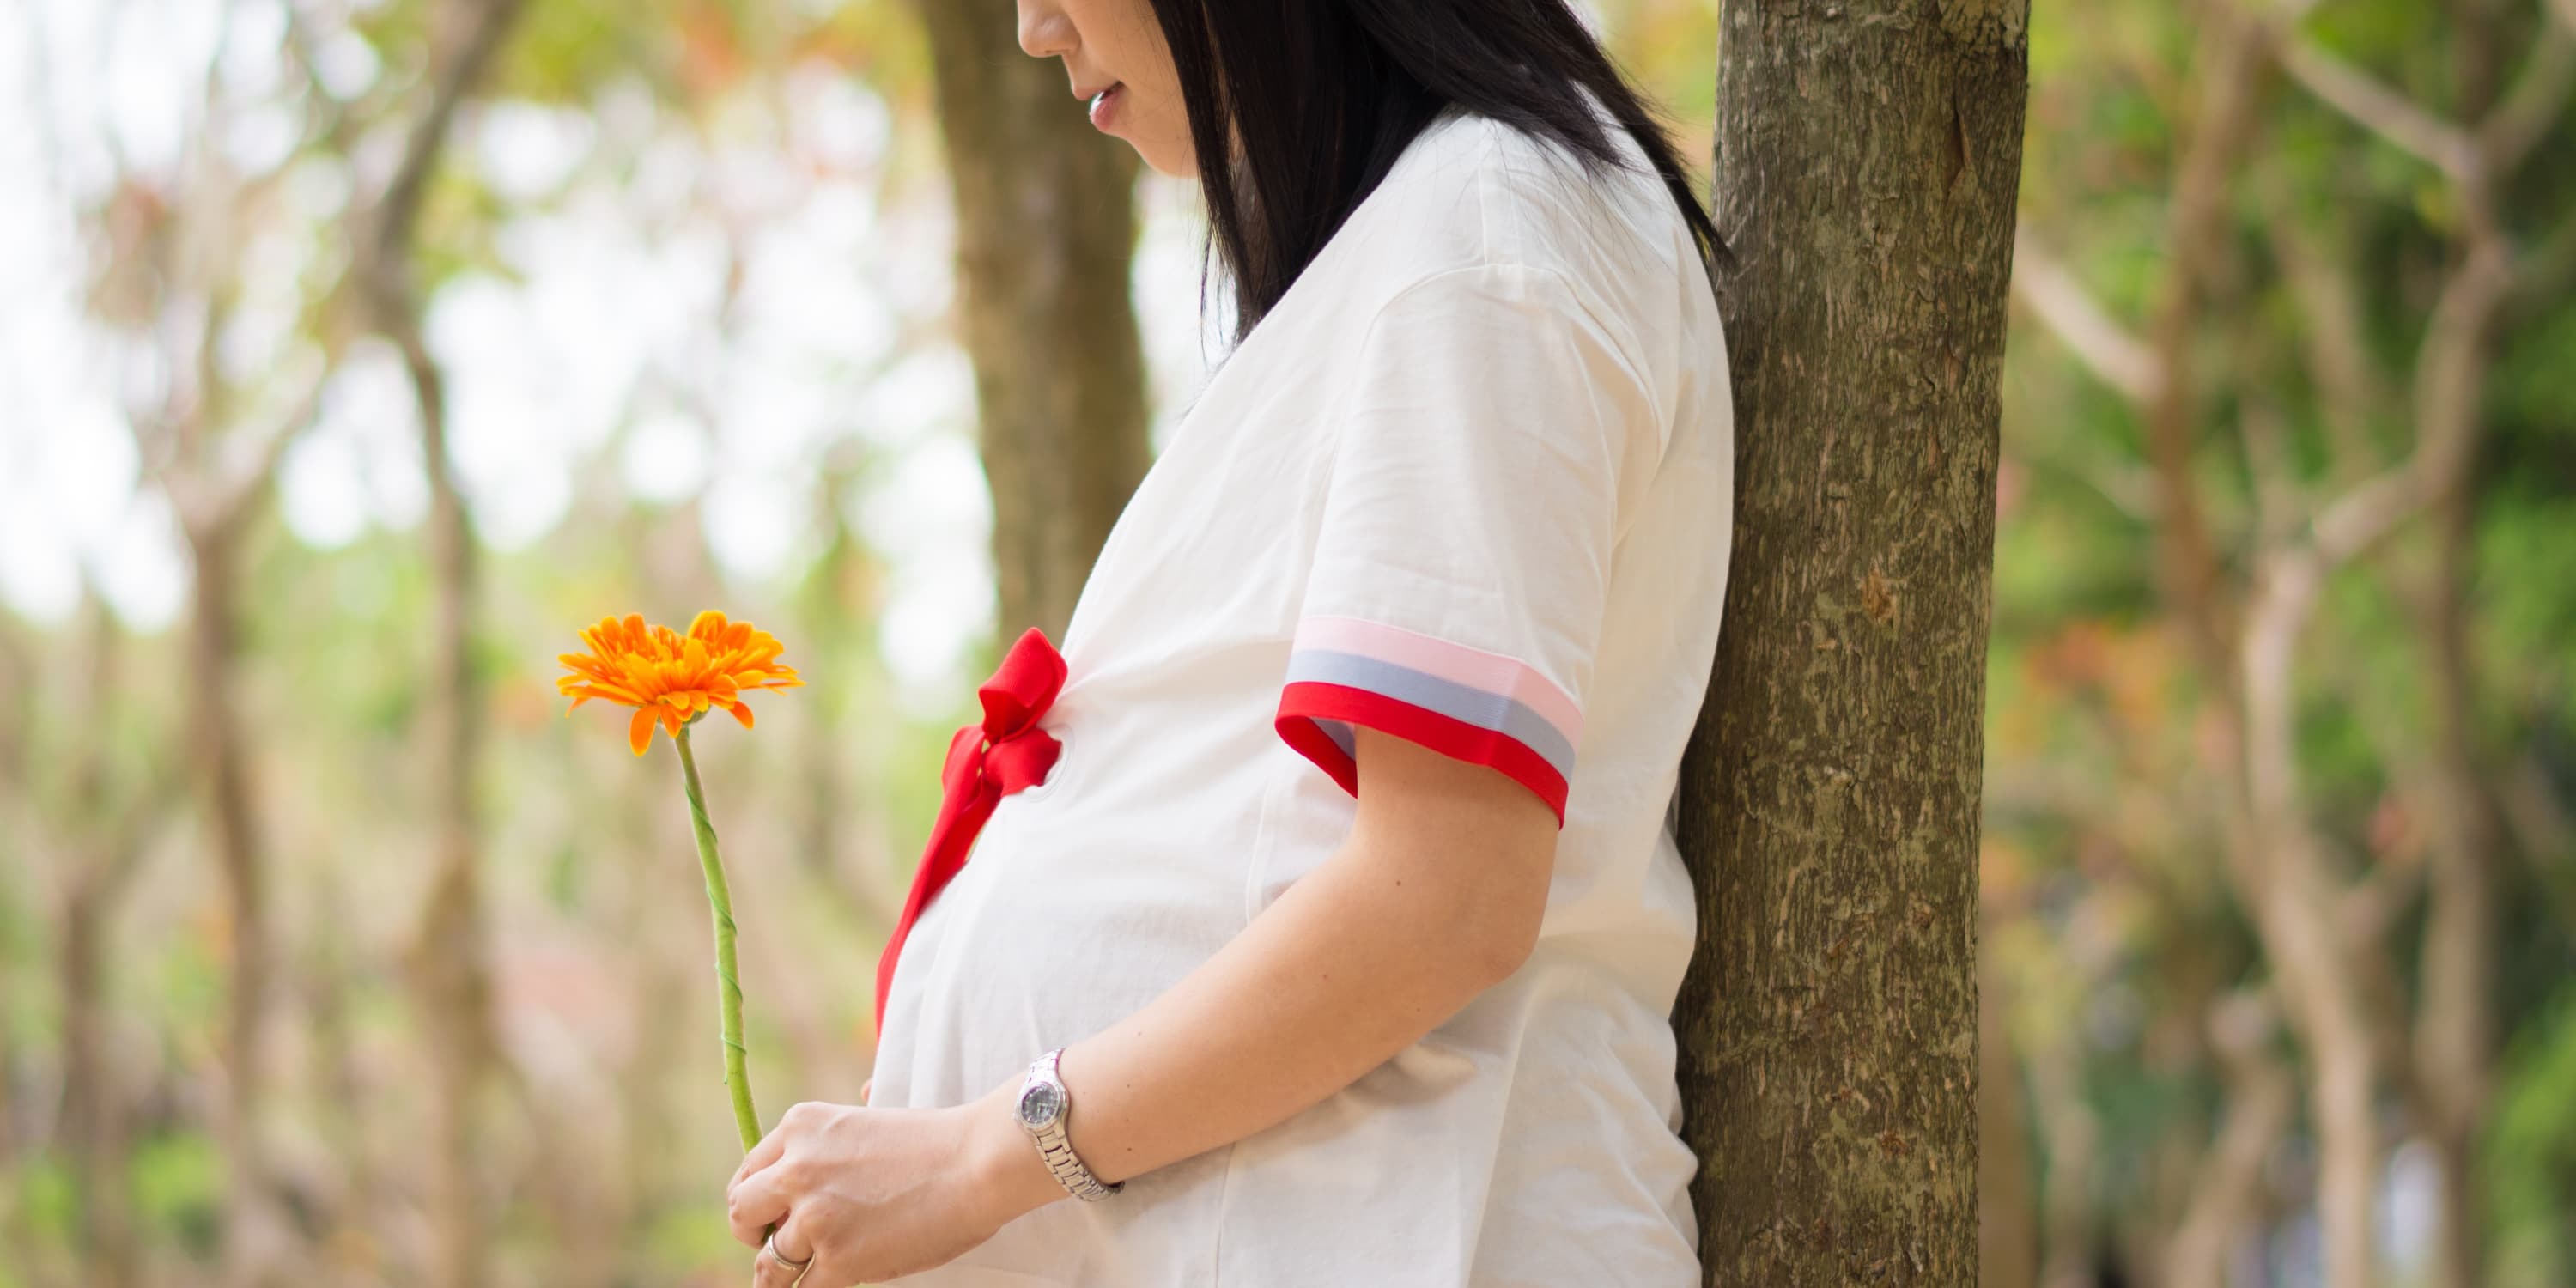 Oldalnézet: Egy fa alatt álló terhes nő virágot tart a kezében.